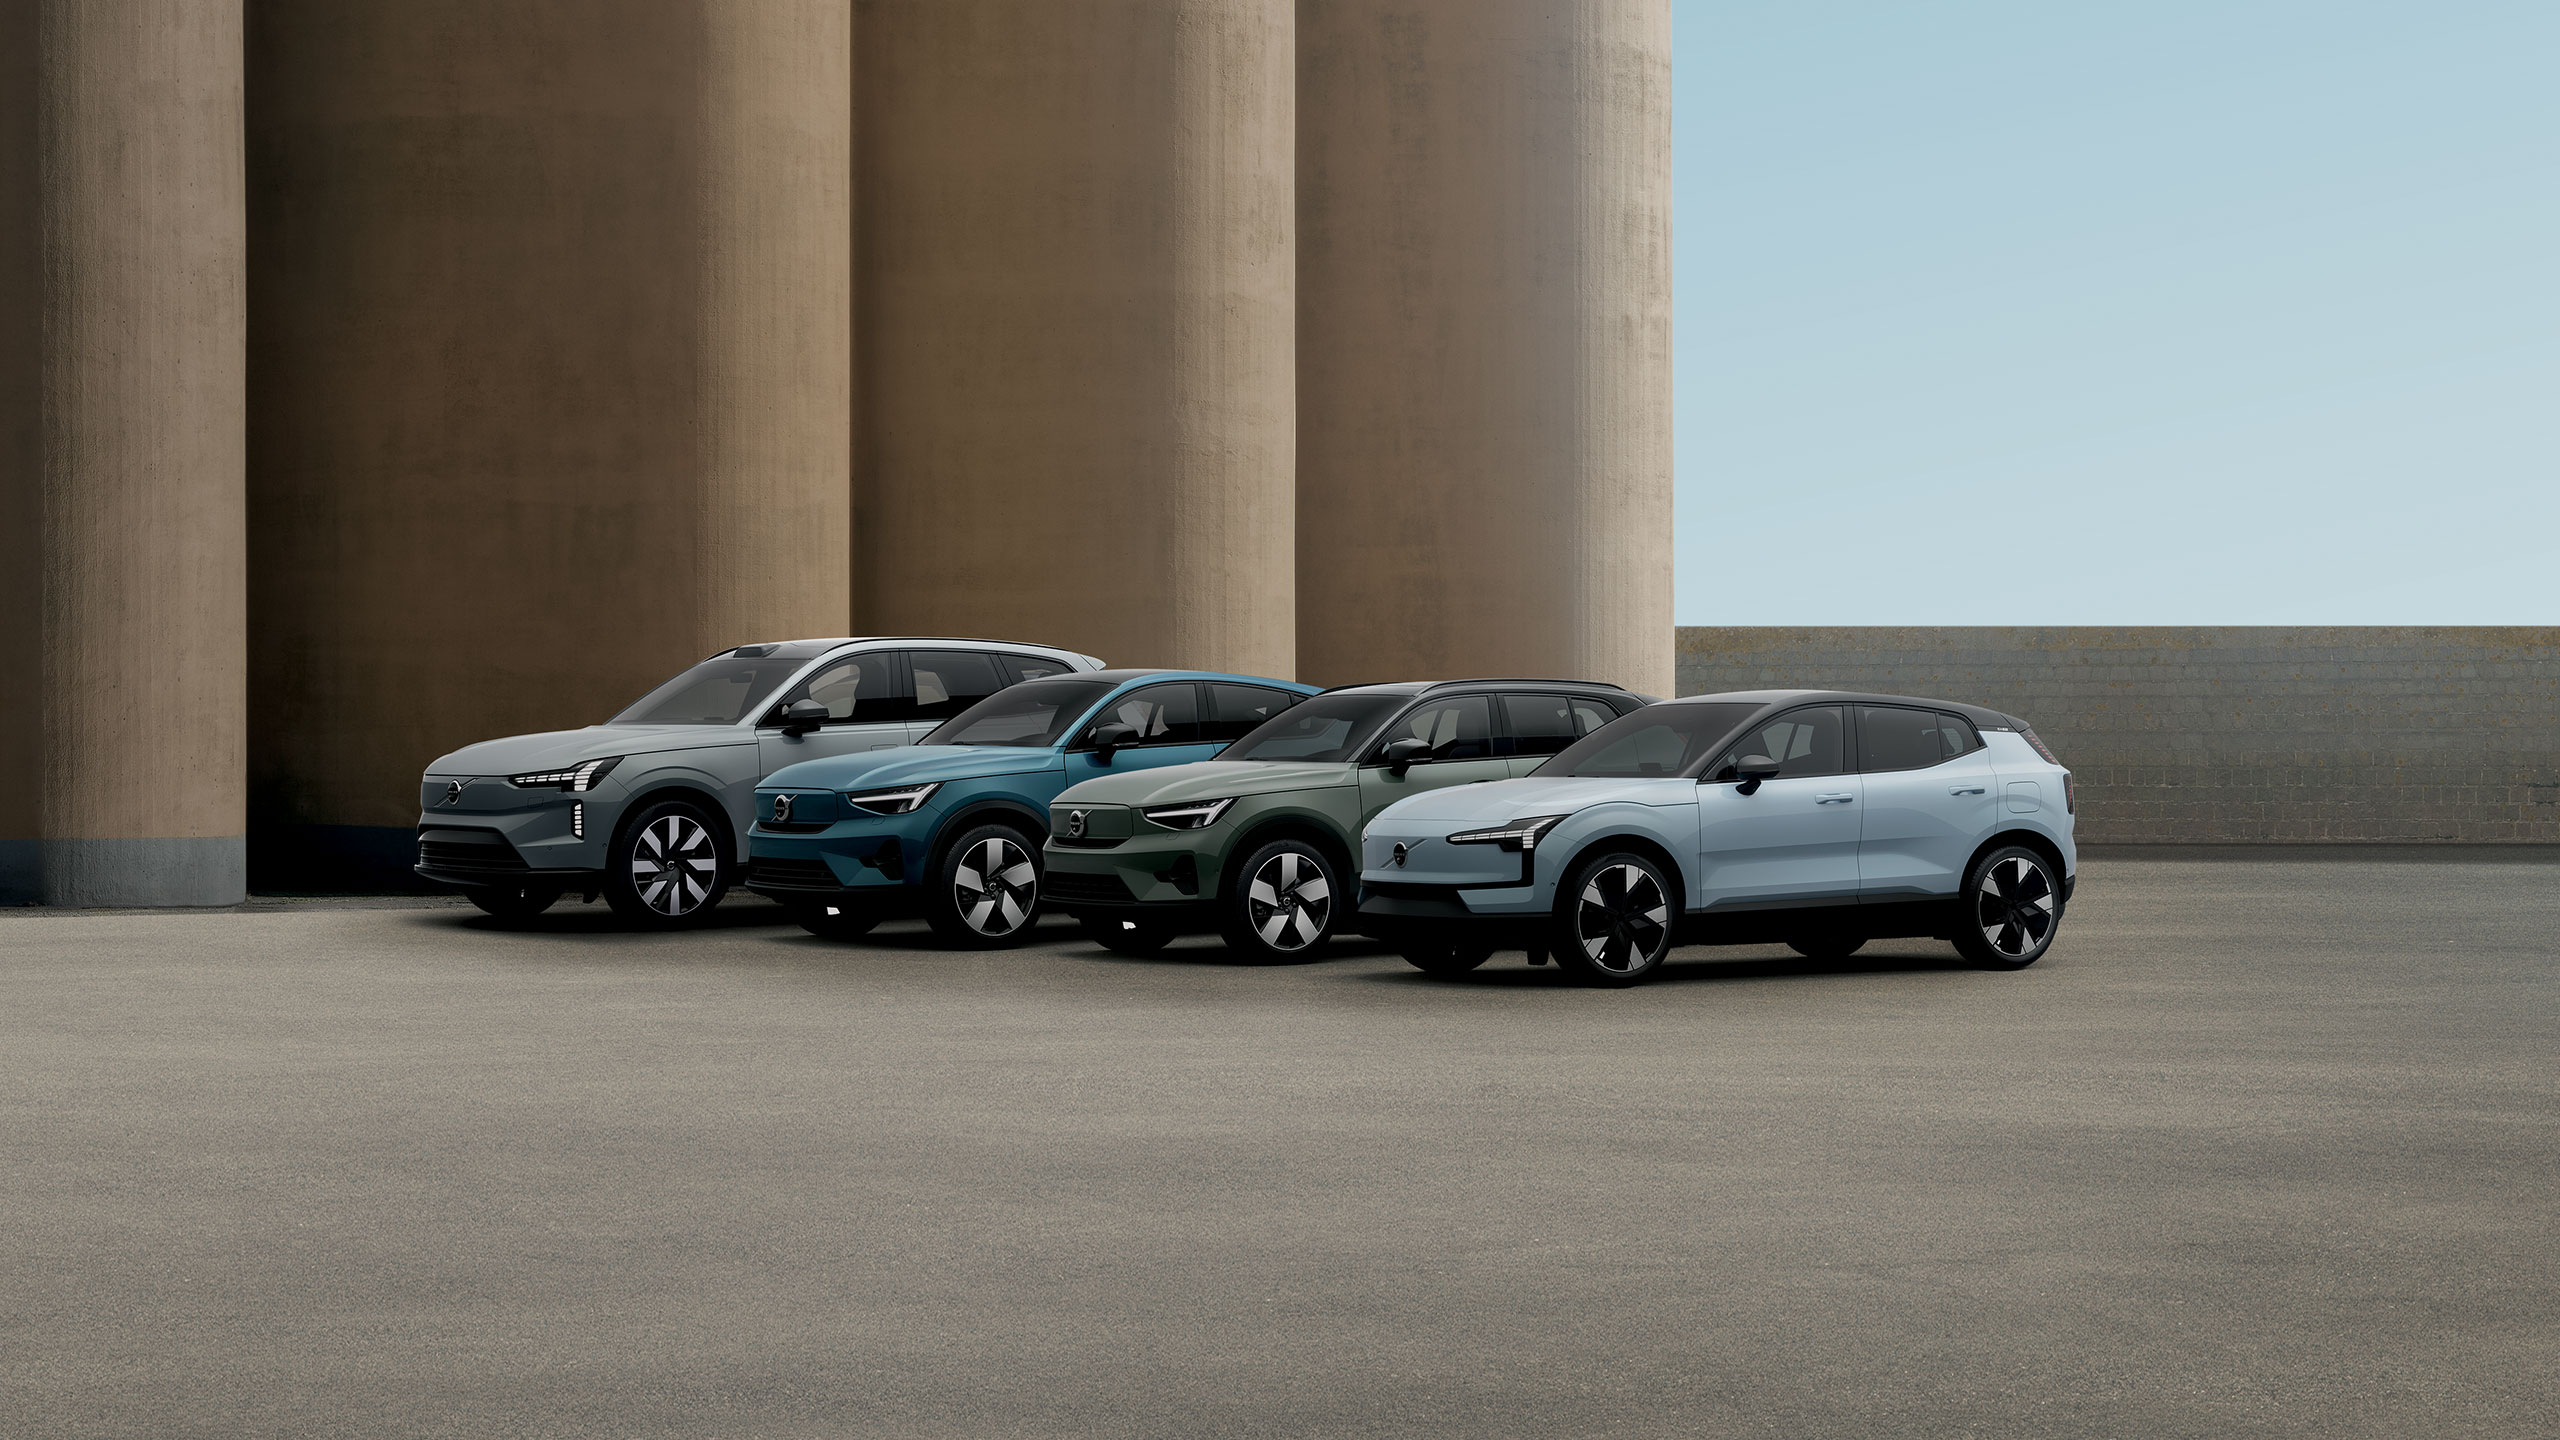 4 Volvo alignés, de couleurs gris, bleu, vert et bleu clair